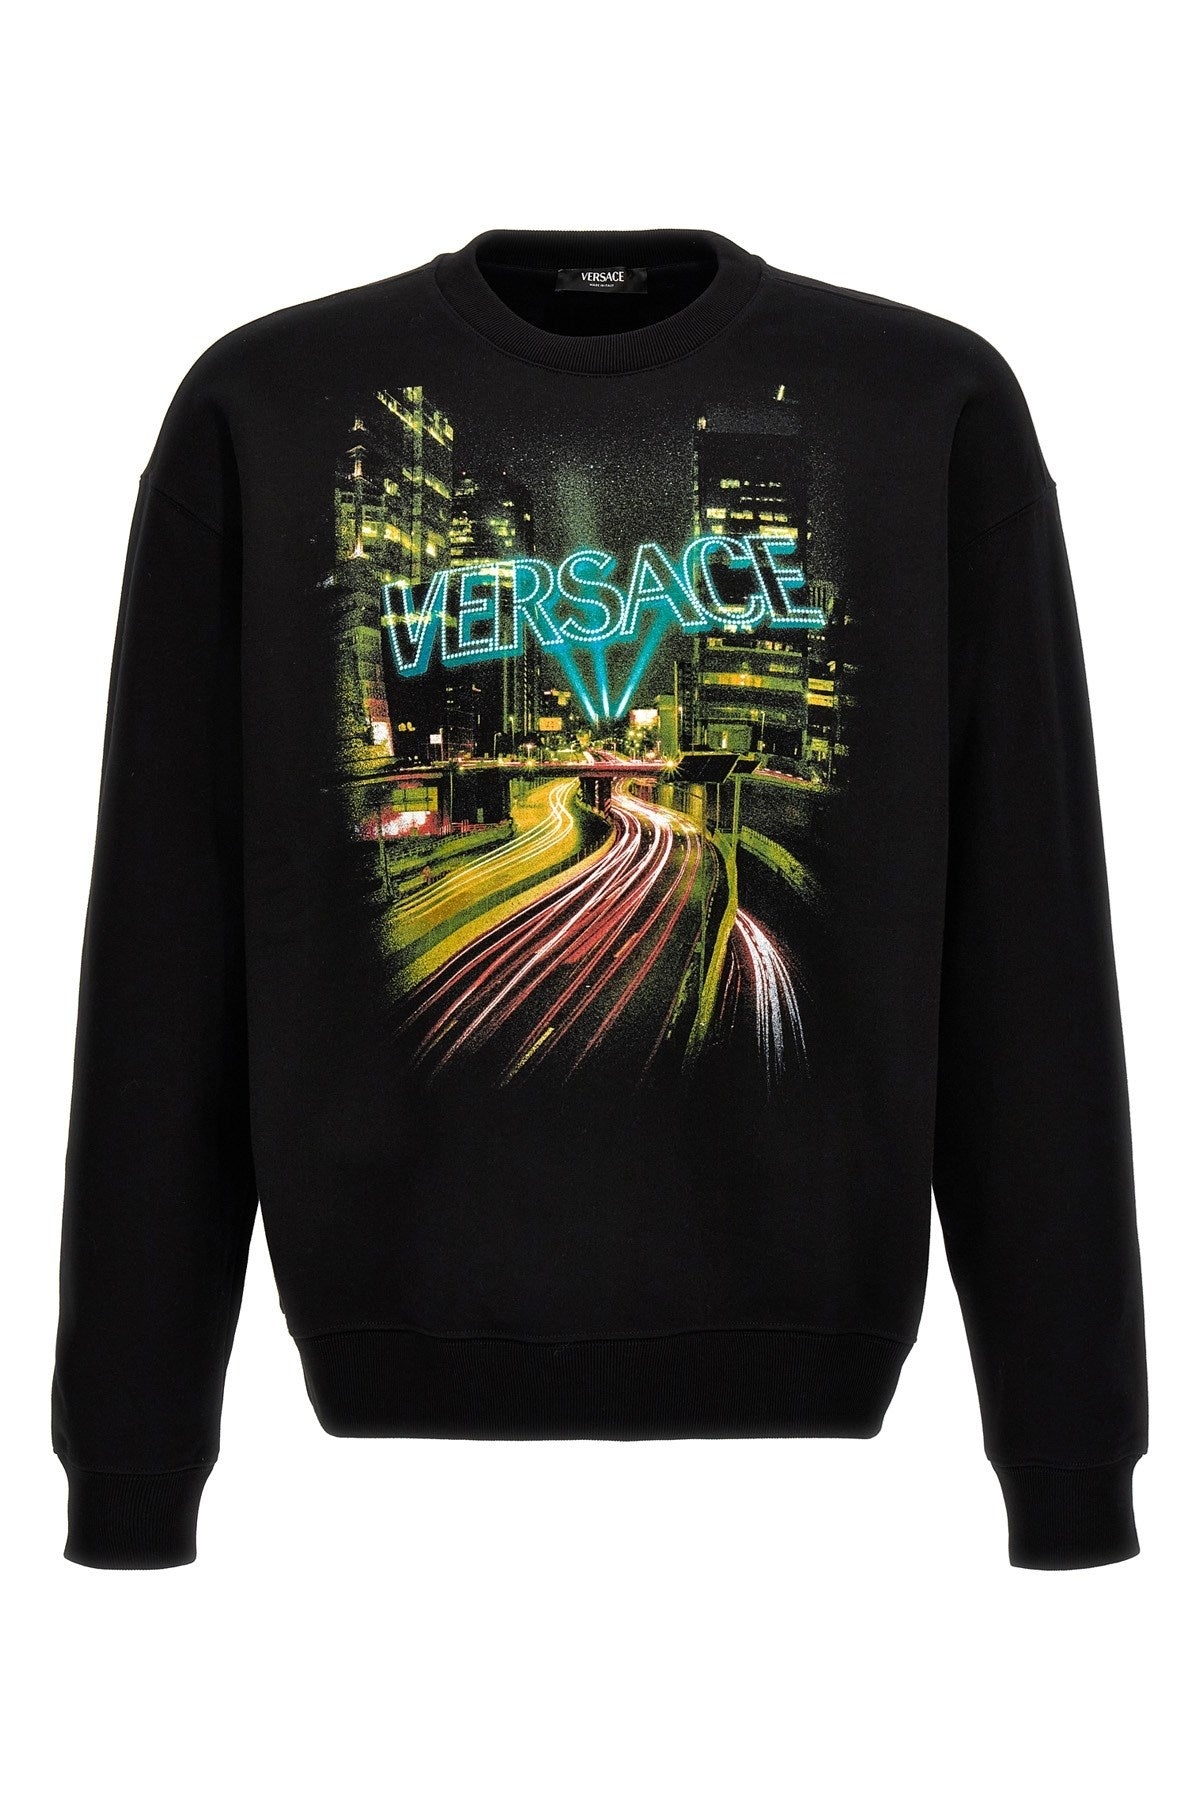 Versace Men 'Versace City' Sweatshirt - 1